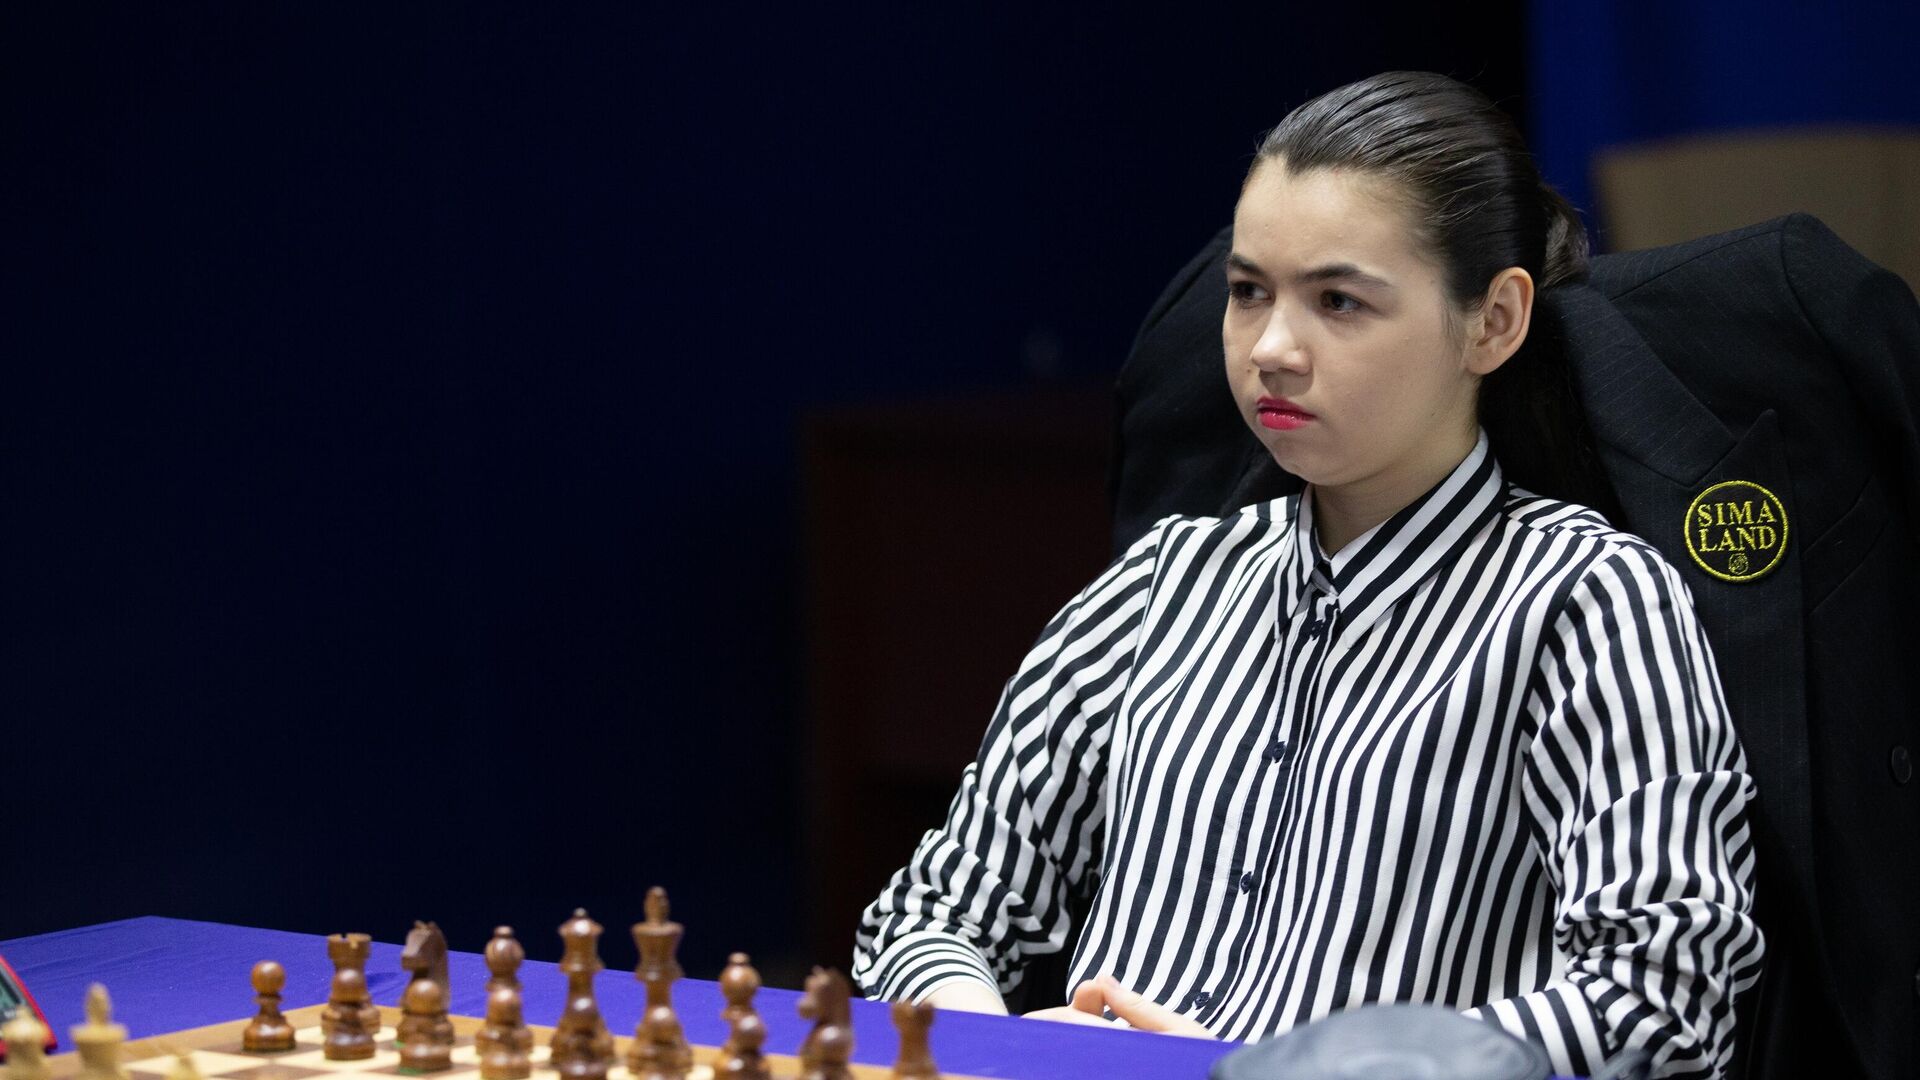 Горячкина победила в третьем туре мужского суперфинала чемпионата России по шахматам